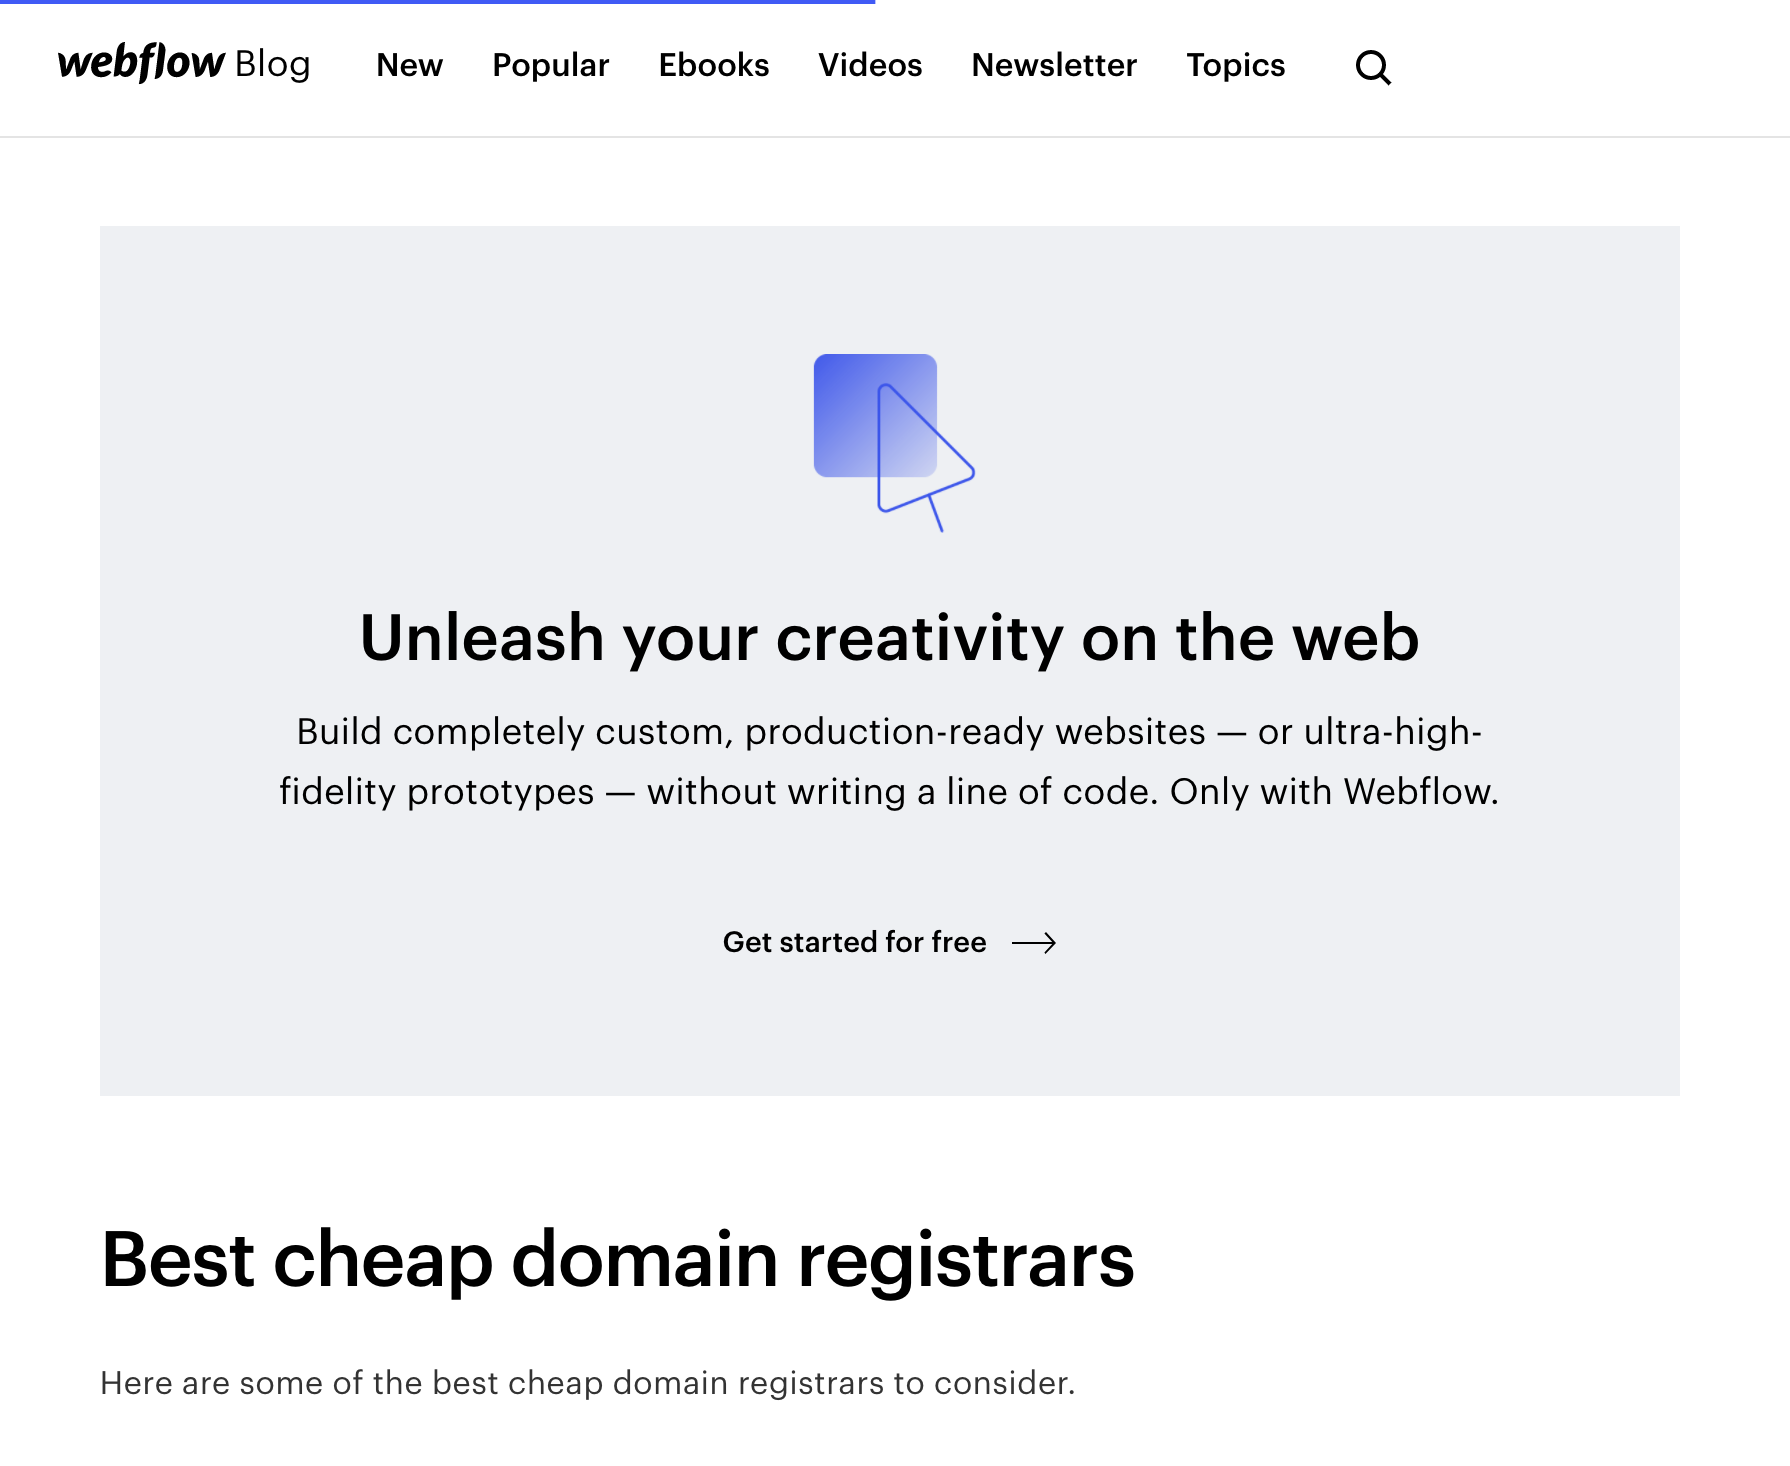 Webflow blog post for best cheap domain registrars